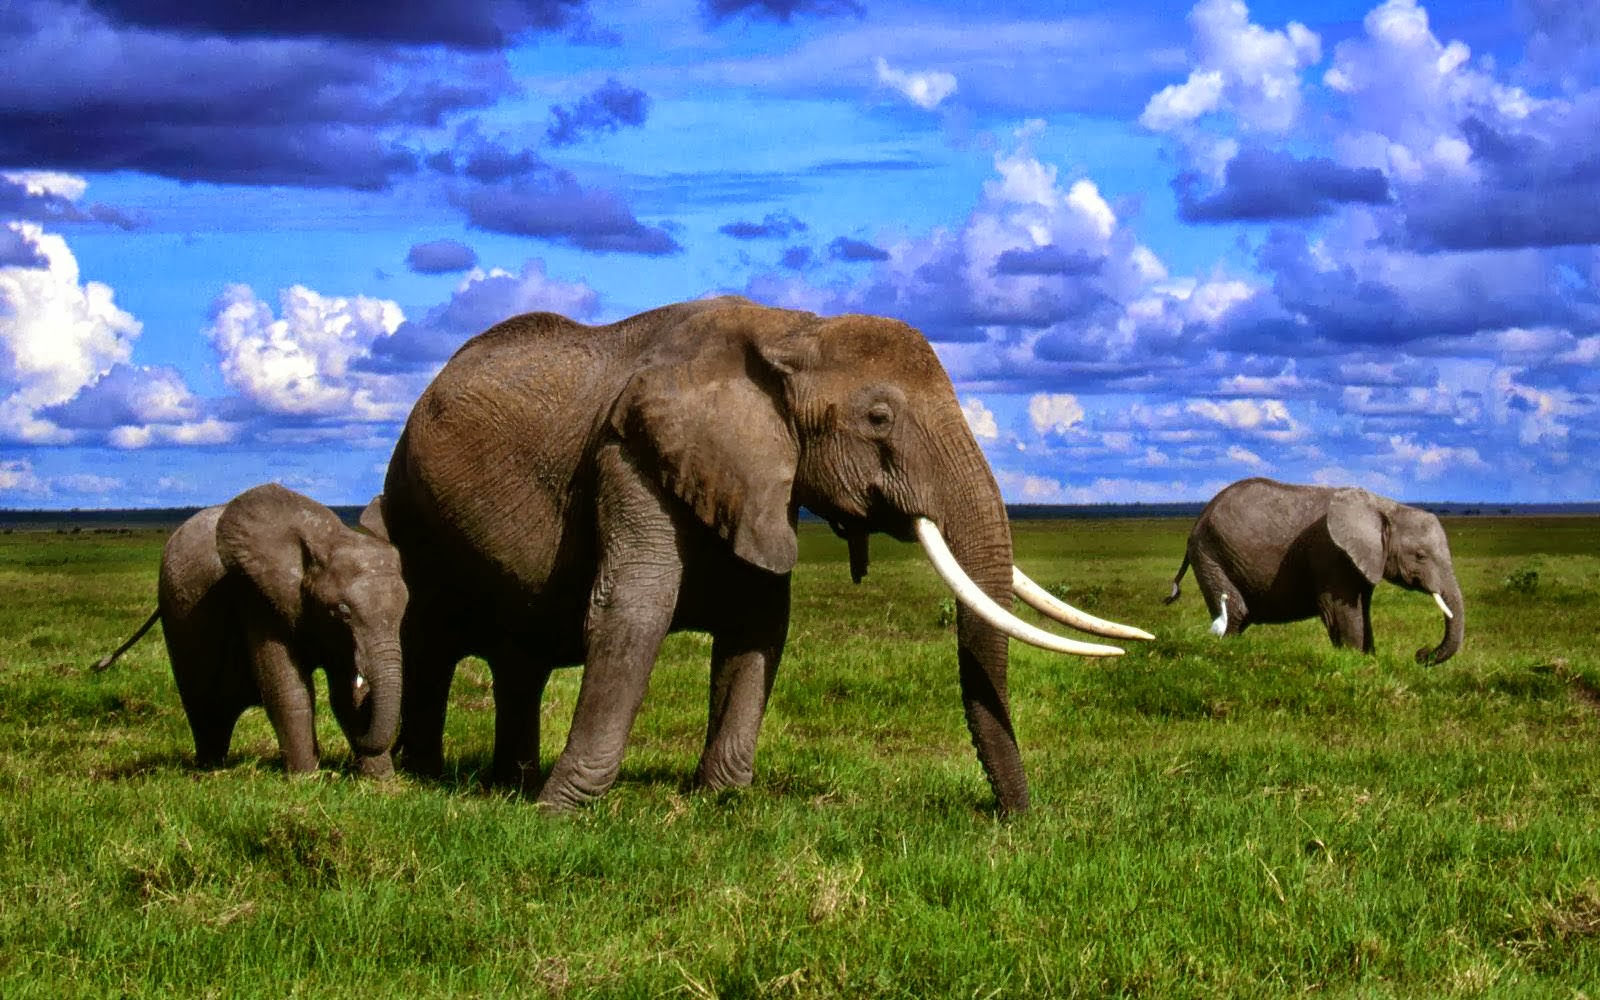 elephants african elephants african elephants african elephants